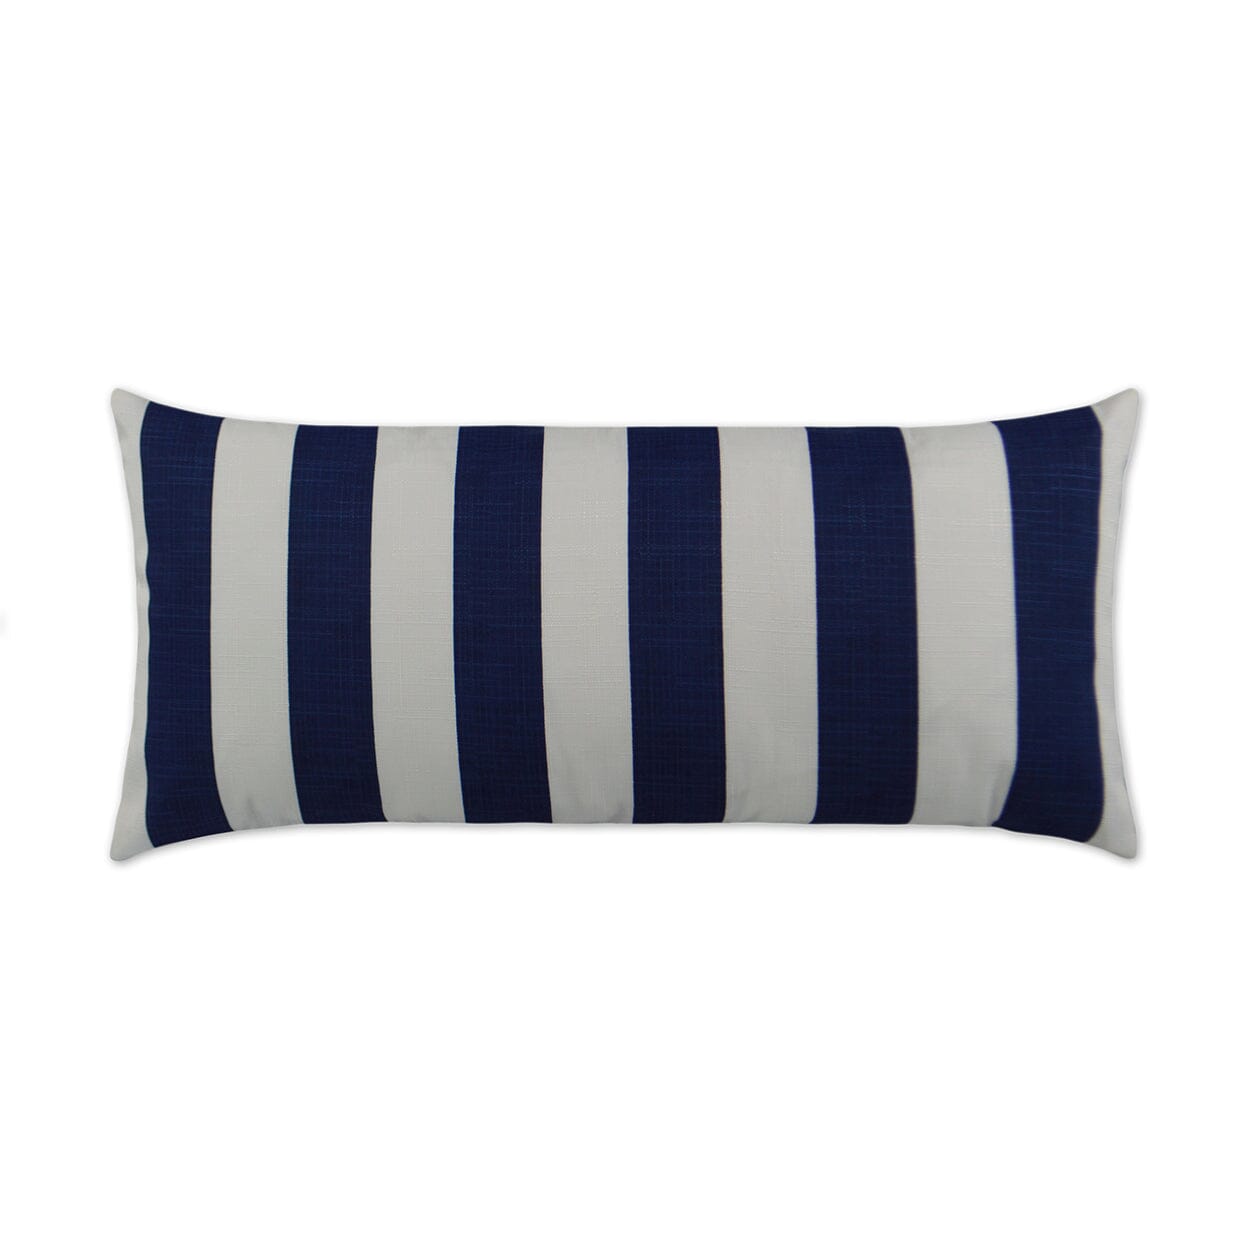 D.V. Kap 12" x 24" Outdoor Lumbar Pillow | Classics Navy Pillows D.V Kap Outdoor